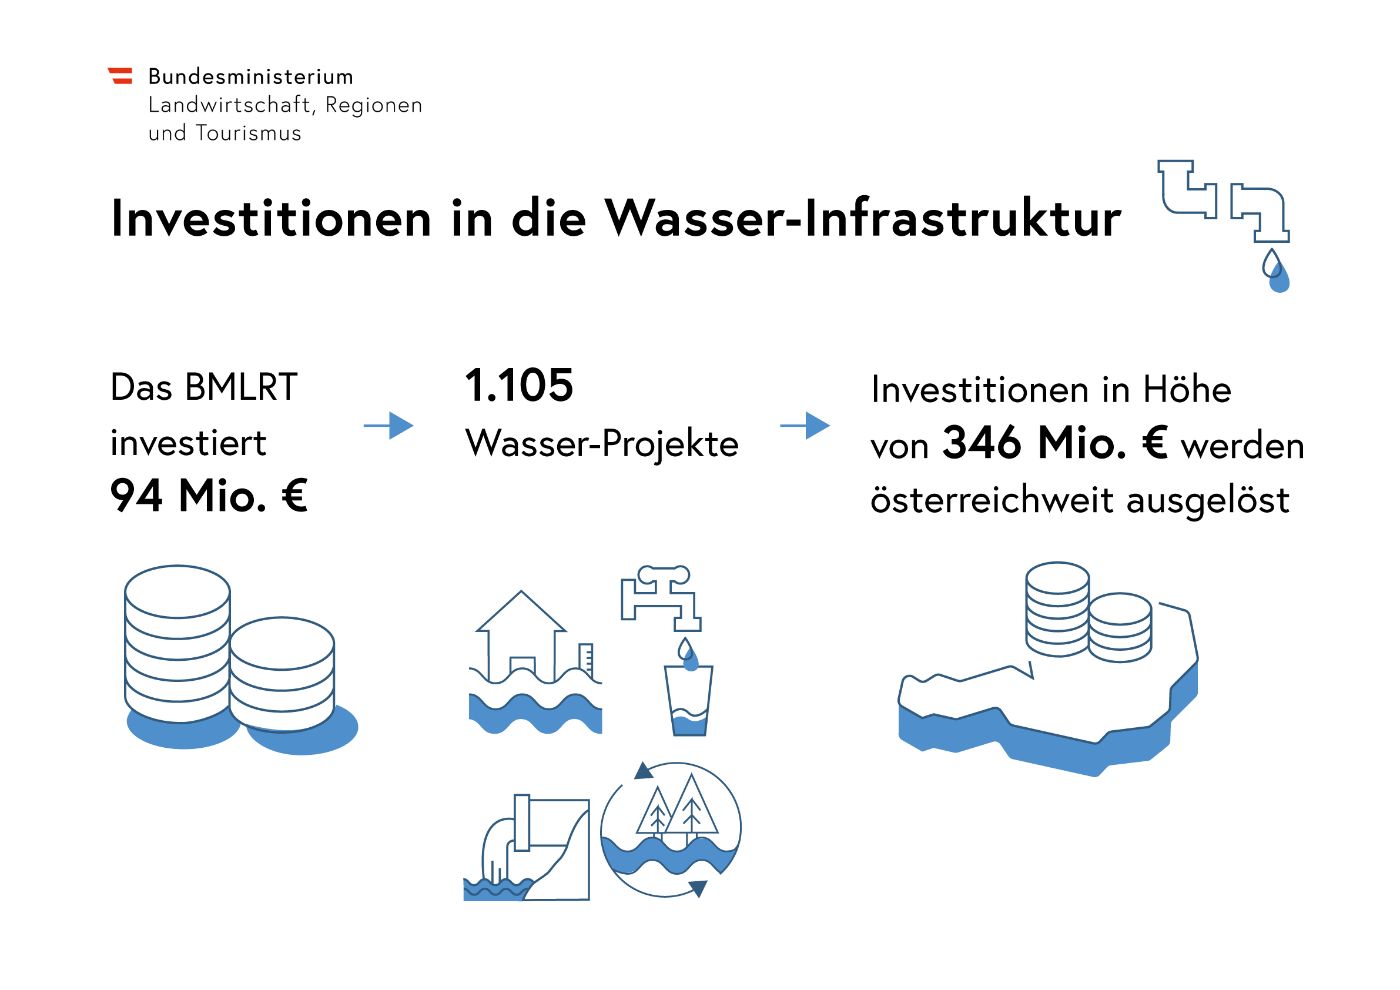 verschiedene Abbildungen mit Text veranschaulichen die Zahlen der Investitionen in die Wasser-Infrastruktur.